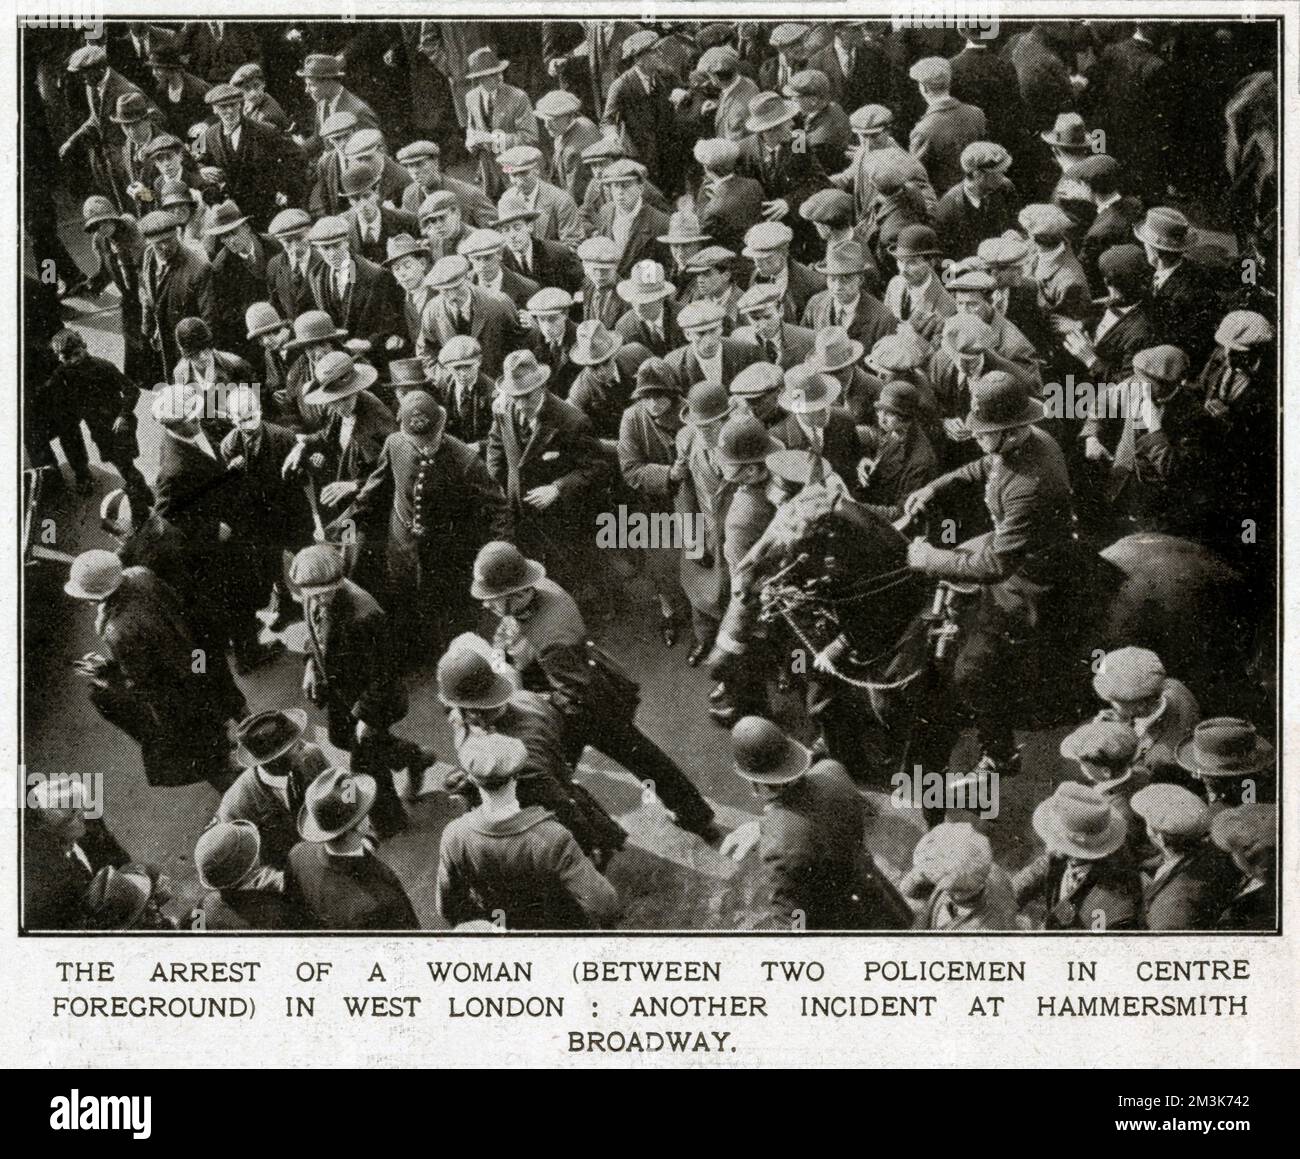 Die Verhaftung einer Frau (zwischen zwei Polizisten im Vordergrund) am Hammersmith Broadway in West London während des Generalstreiks. Obwohl es weitgehend friedlich war, gab es während des Streiks immer noch einige erhebliche Störungen. Zur Unterstützung eines Streiks der Bergleute wegen drohender Lohnkürzungen berief der Gewerkschaftskongress Anfang Mai 1926 einen Generalstreik ein. Der Streik betraf nur bestimmte wichtige Industriesektoren (Docks, Strom, Gas, Eisenbahnen), aber angesichts gut organisierter staatlicher Notfallmaßnahmen und fehlender wirklicher öffentlicher Unterstützung brach er nach neun Tagen 1926 zusammen Stockfoto